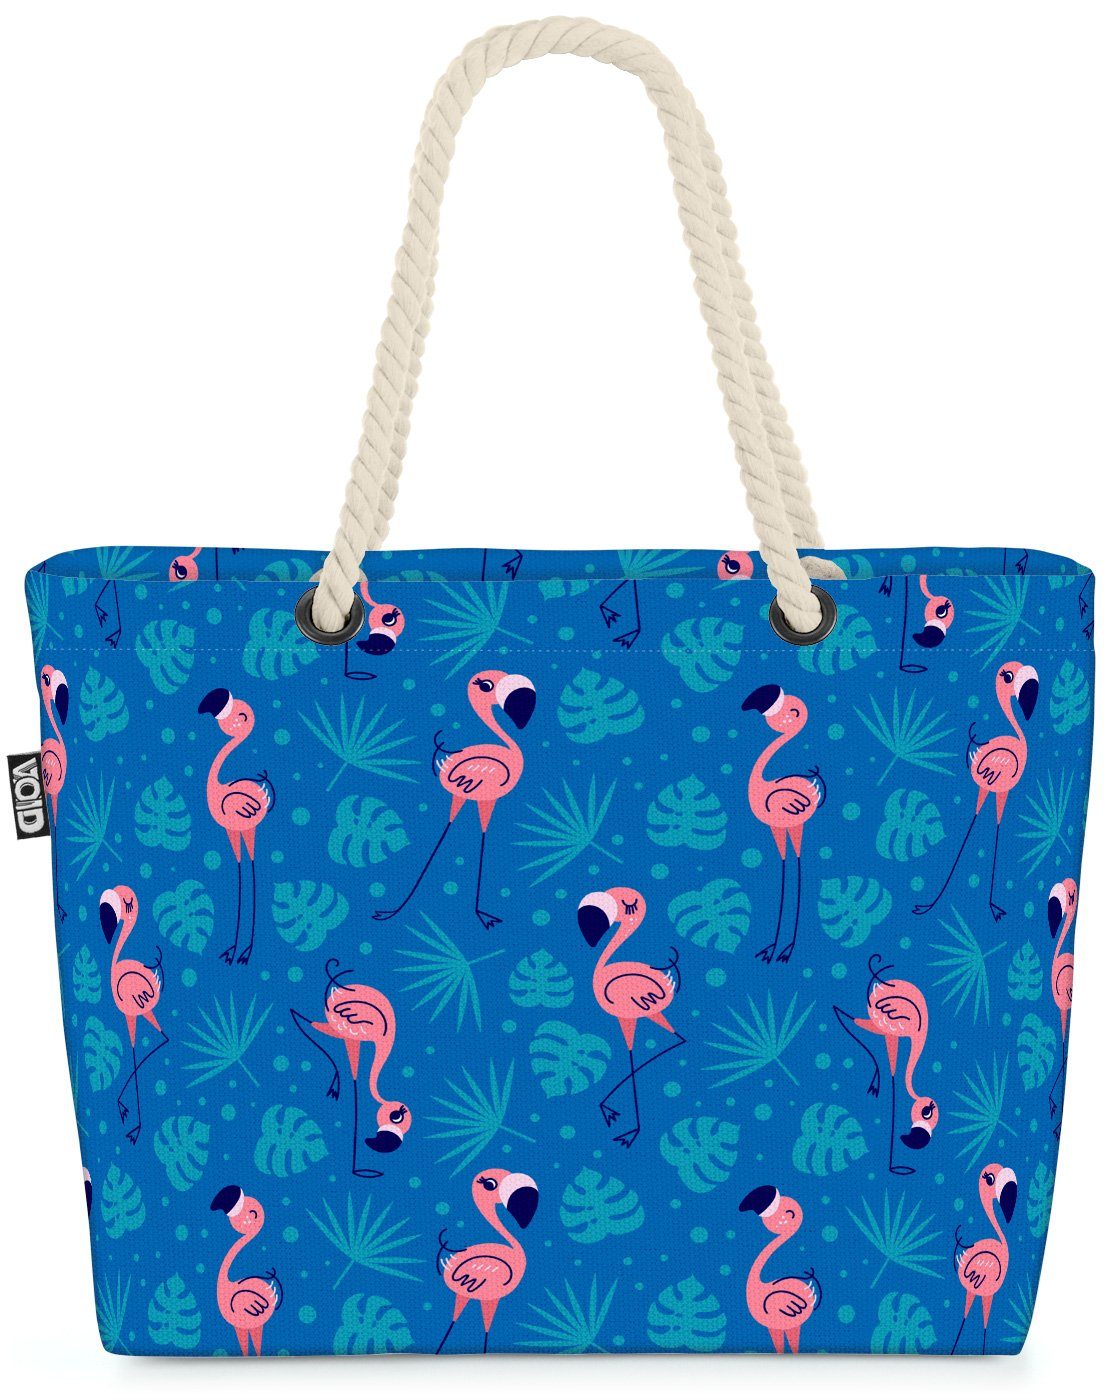 (1-tlg), Bag gestreift blau Sommer Strandtasche Muster Flamingo Pool Palmen Tiere Beach Reise Urlaub VOID